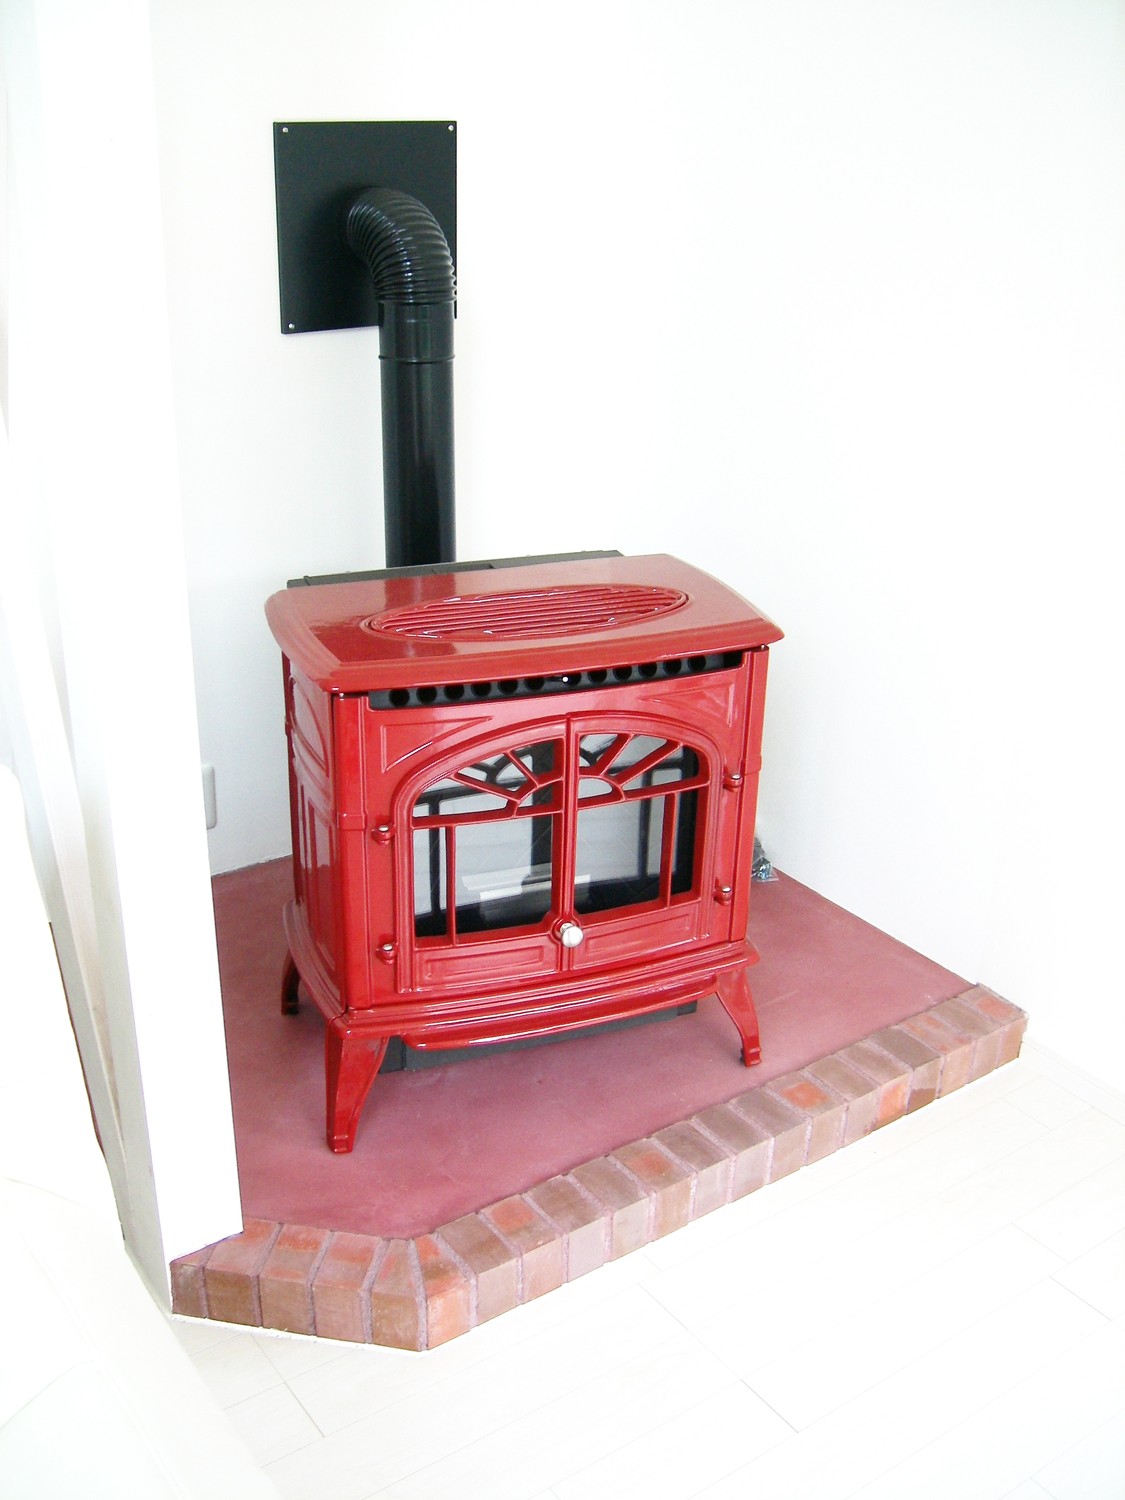 赤と白で揃えたいという施主様の要望で、暖炉も赤色です。